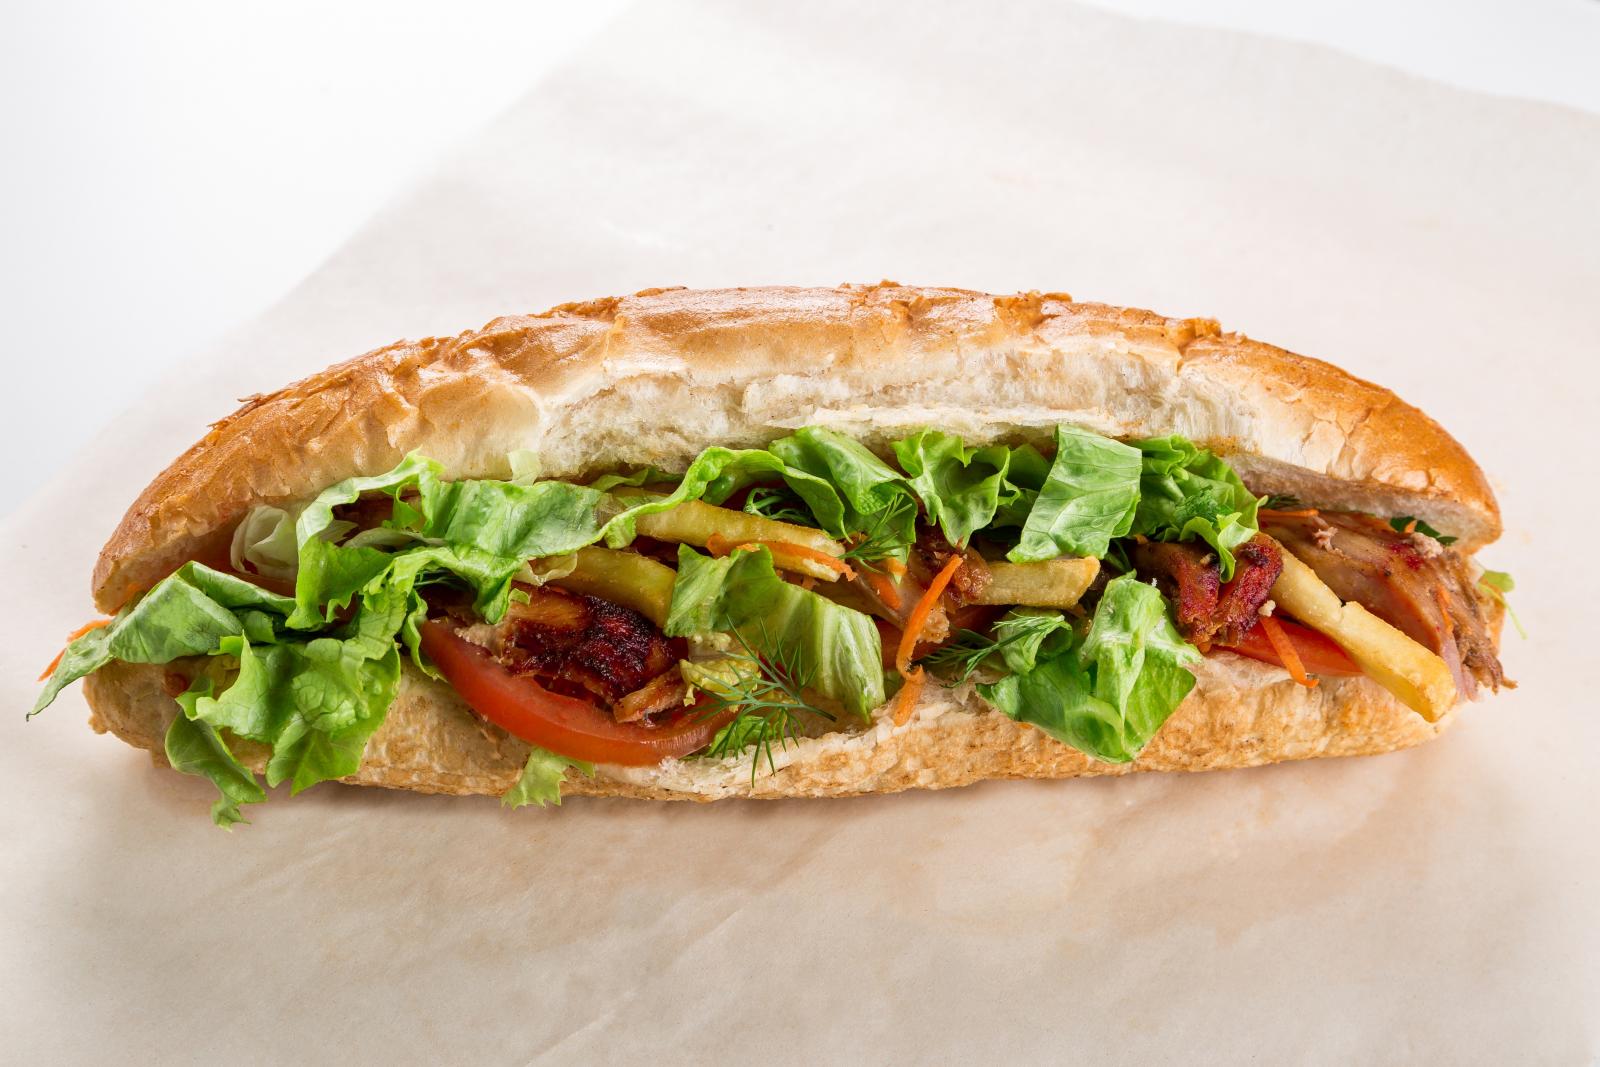 Sandwich. Photo credit: Pexels